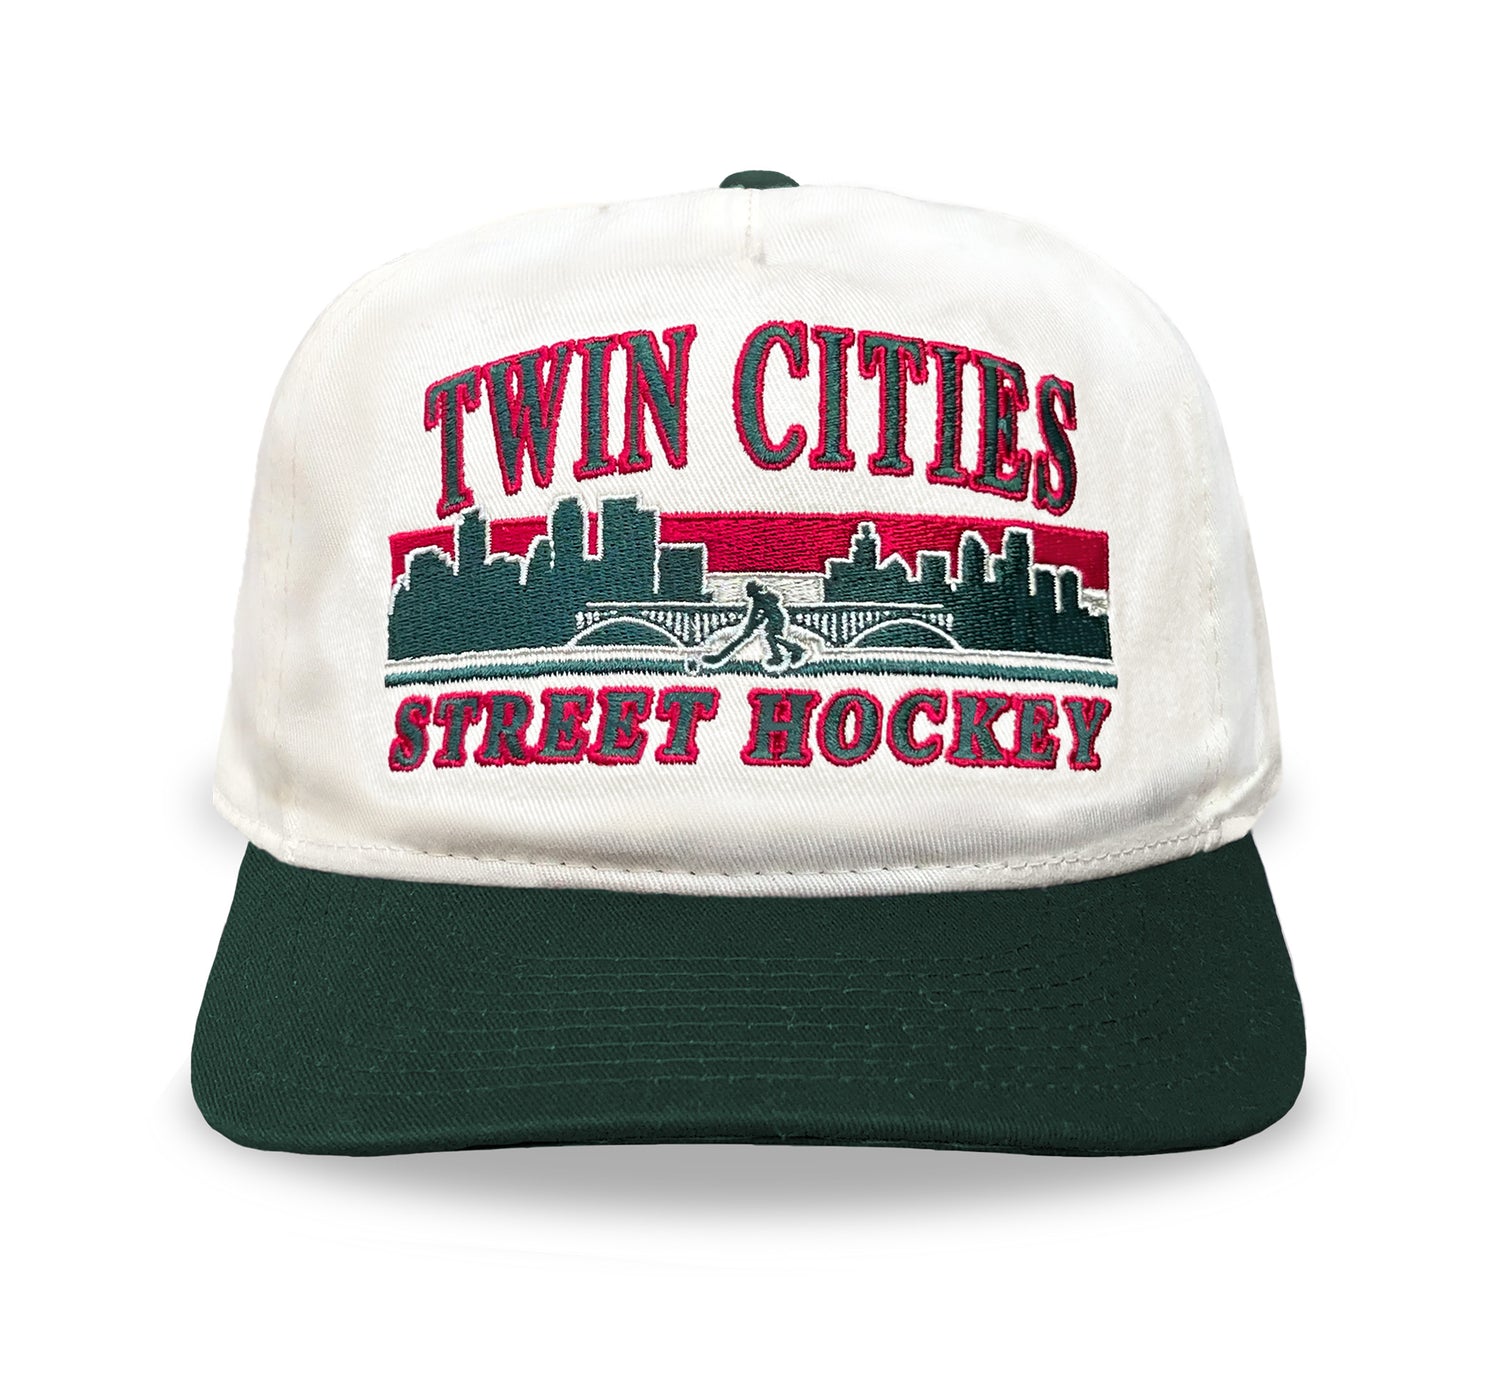 New Jersey Street Hockey Snapback: Cream